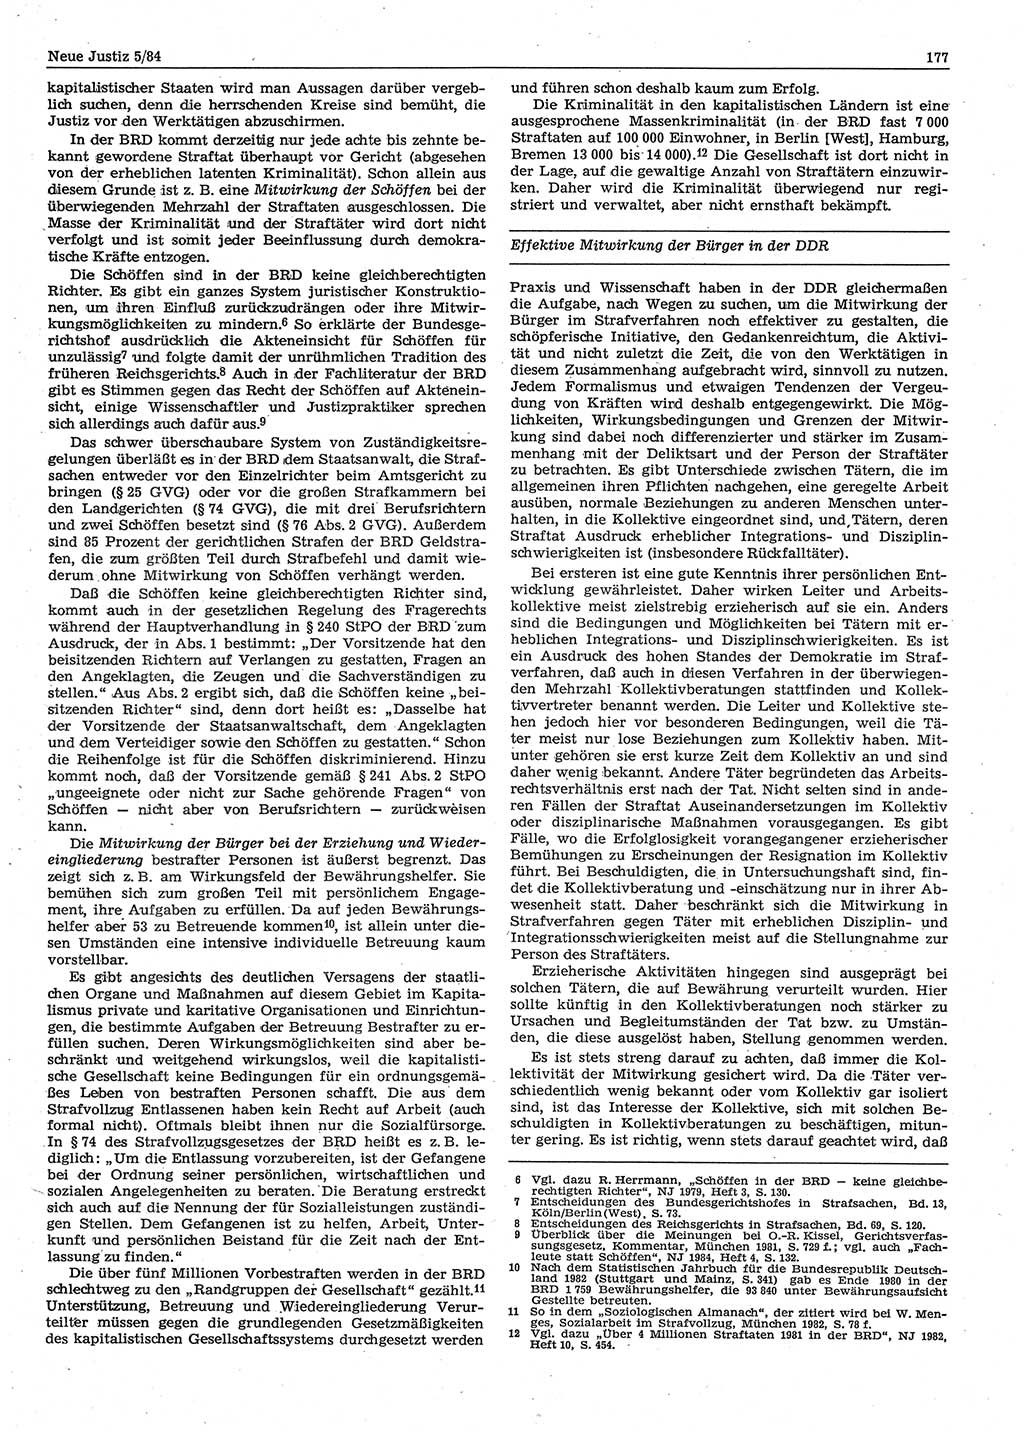 Neue Justiz (NJ), Zeitschrift für sozialistisches Recht und Gesetzlichkeit [Deutsche Demokratische Republik (DDR)], 38. Jahrgang 1984, Seite 177 (NJ DDR 1984, S. 177)